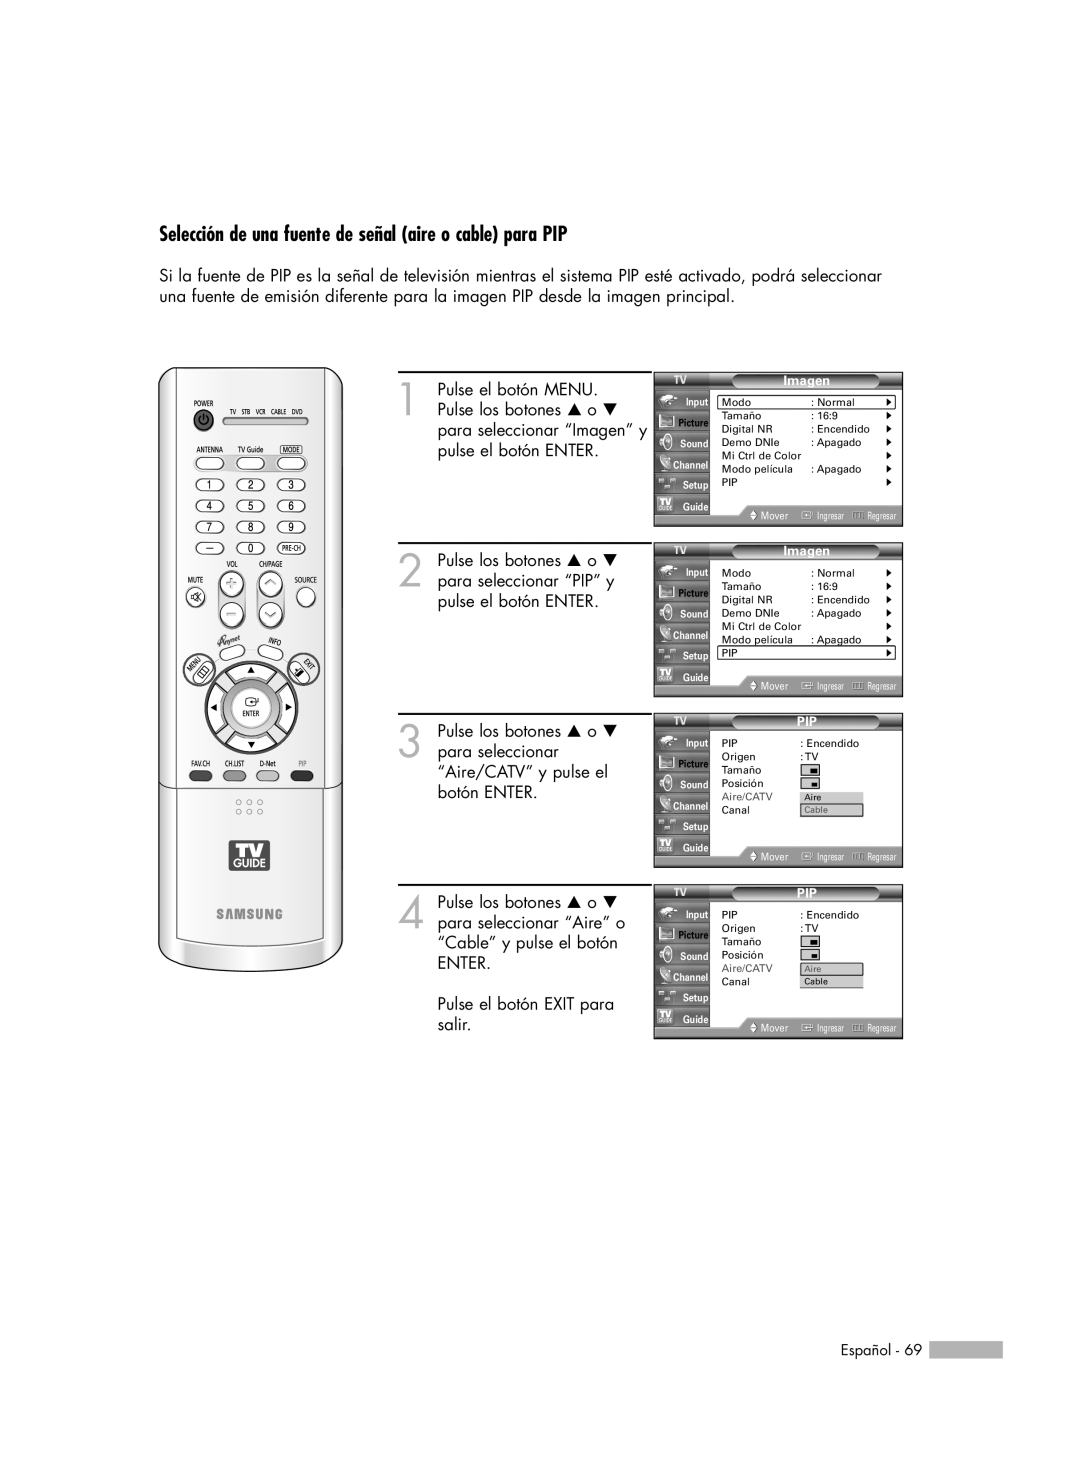 Samsung HL-R5078W, HL-R6178W, HL-R5678W, HL-R7178W manual ENTER Pulse el botón EXIT para salir 